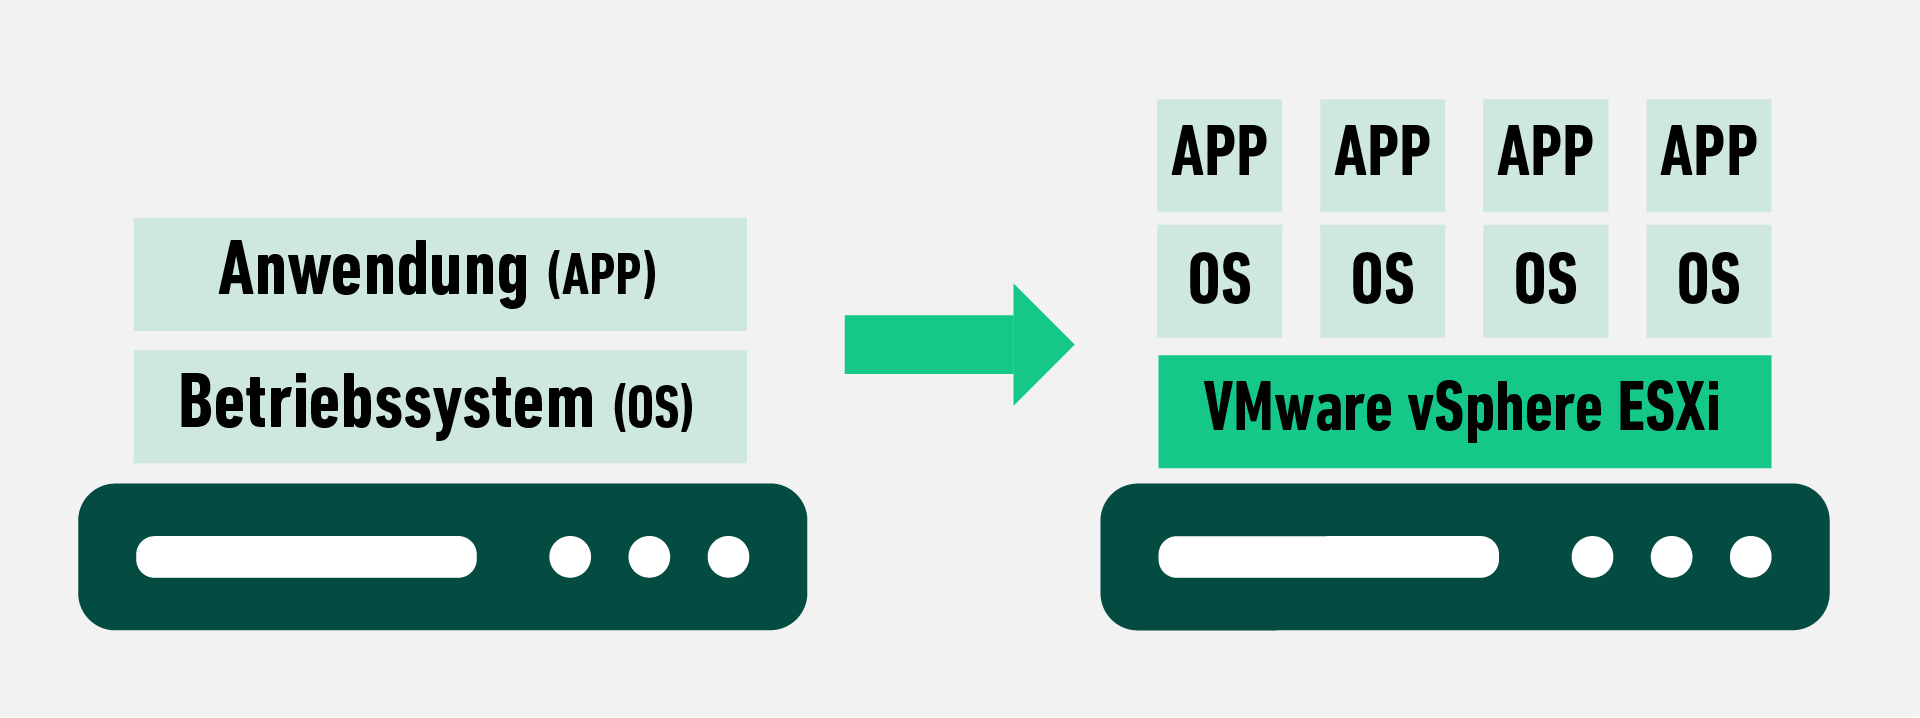 Auf dem Bild ist eine grüne Infographik über die Virtualisierungs-Plattform vSphere sichtbar.